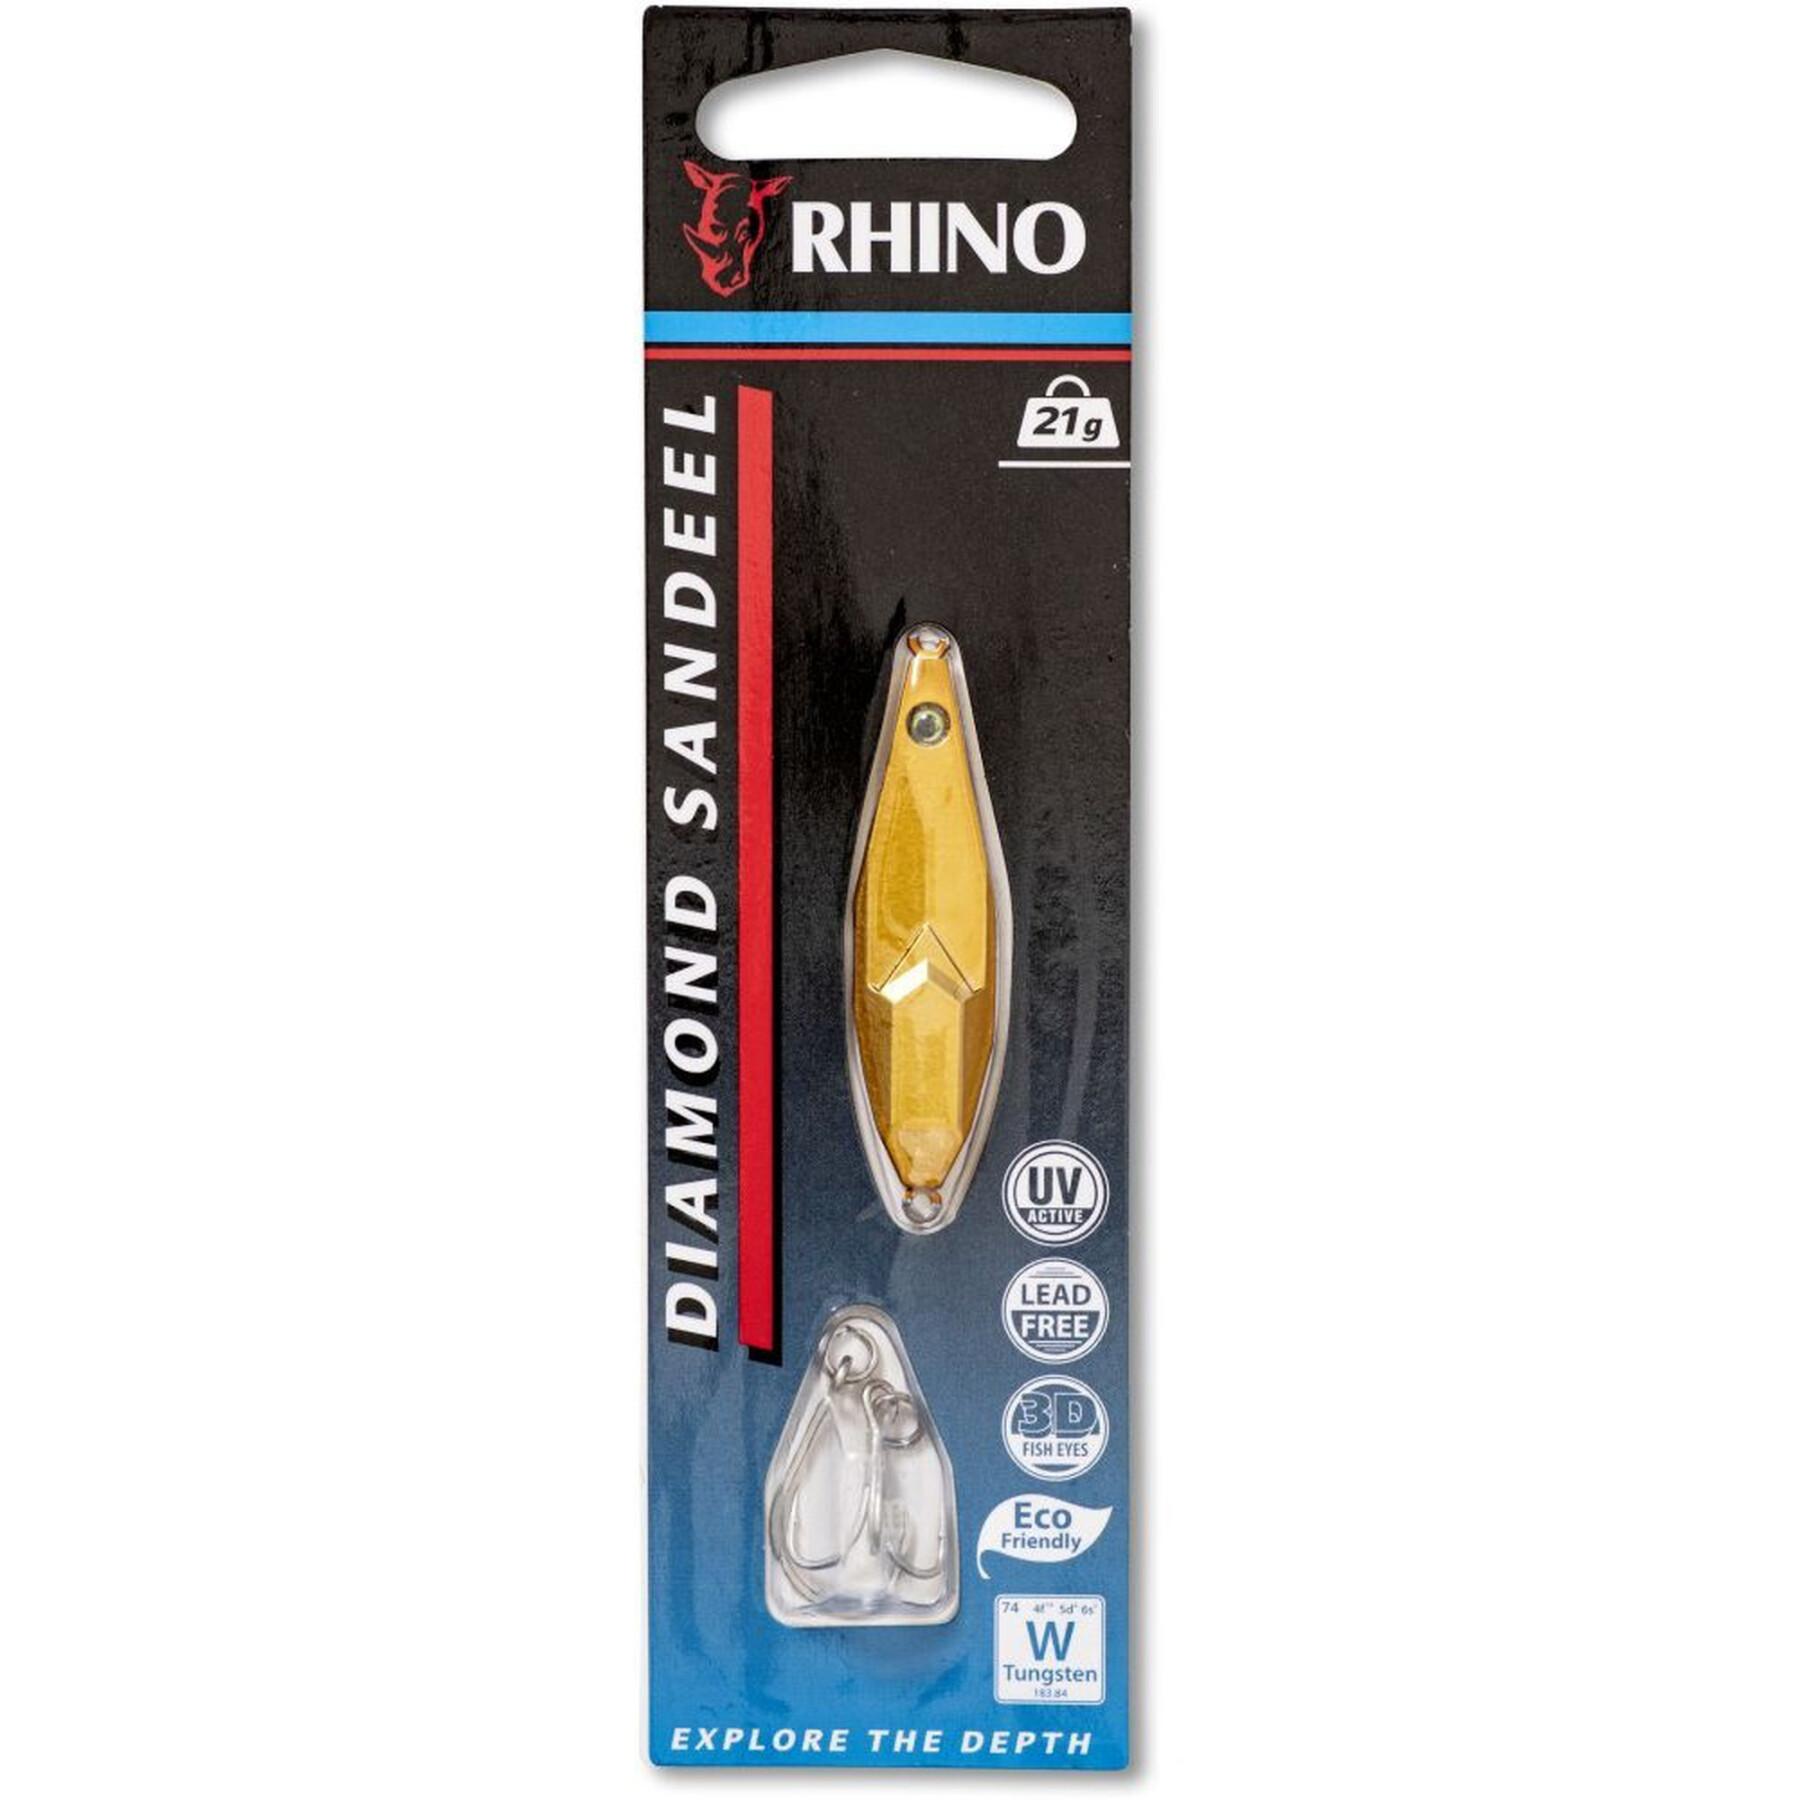 Przynęta Rhino Diamond Sandeel – 12g